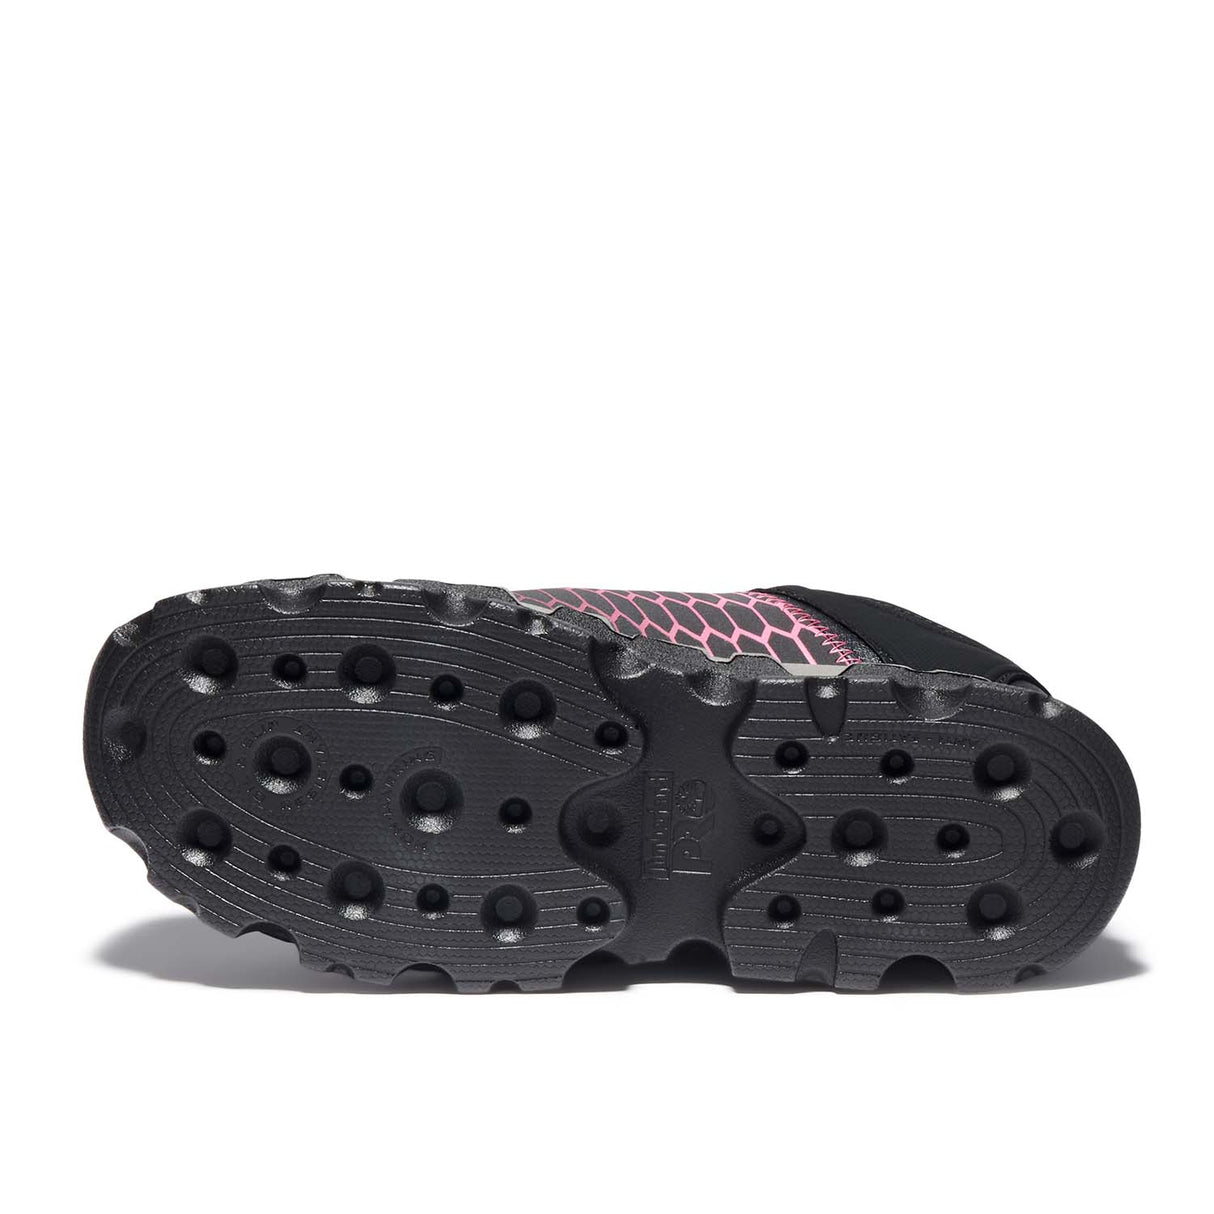 Timberland PRO-Powertrain Sport Women's Alloy-Toe Shoe Black/Pink-Steel Toes-4